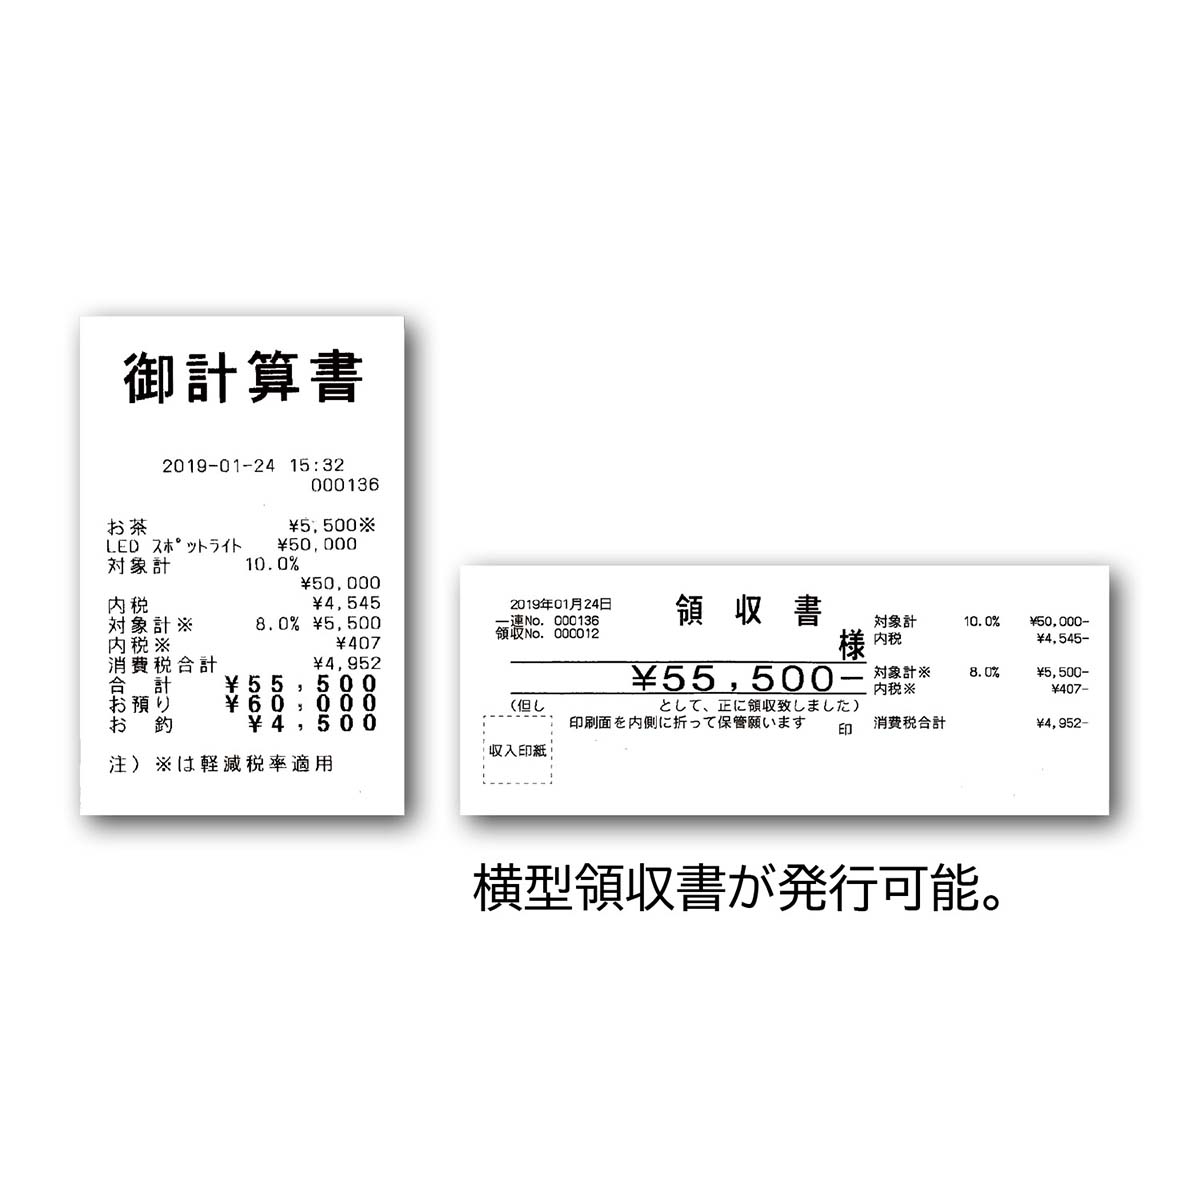 東芝テック レジスター MA-700-10 10部門タイプ ブラック ロール紙10巻付き - 1